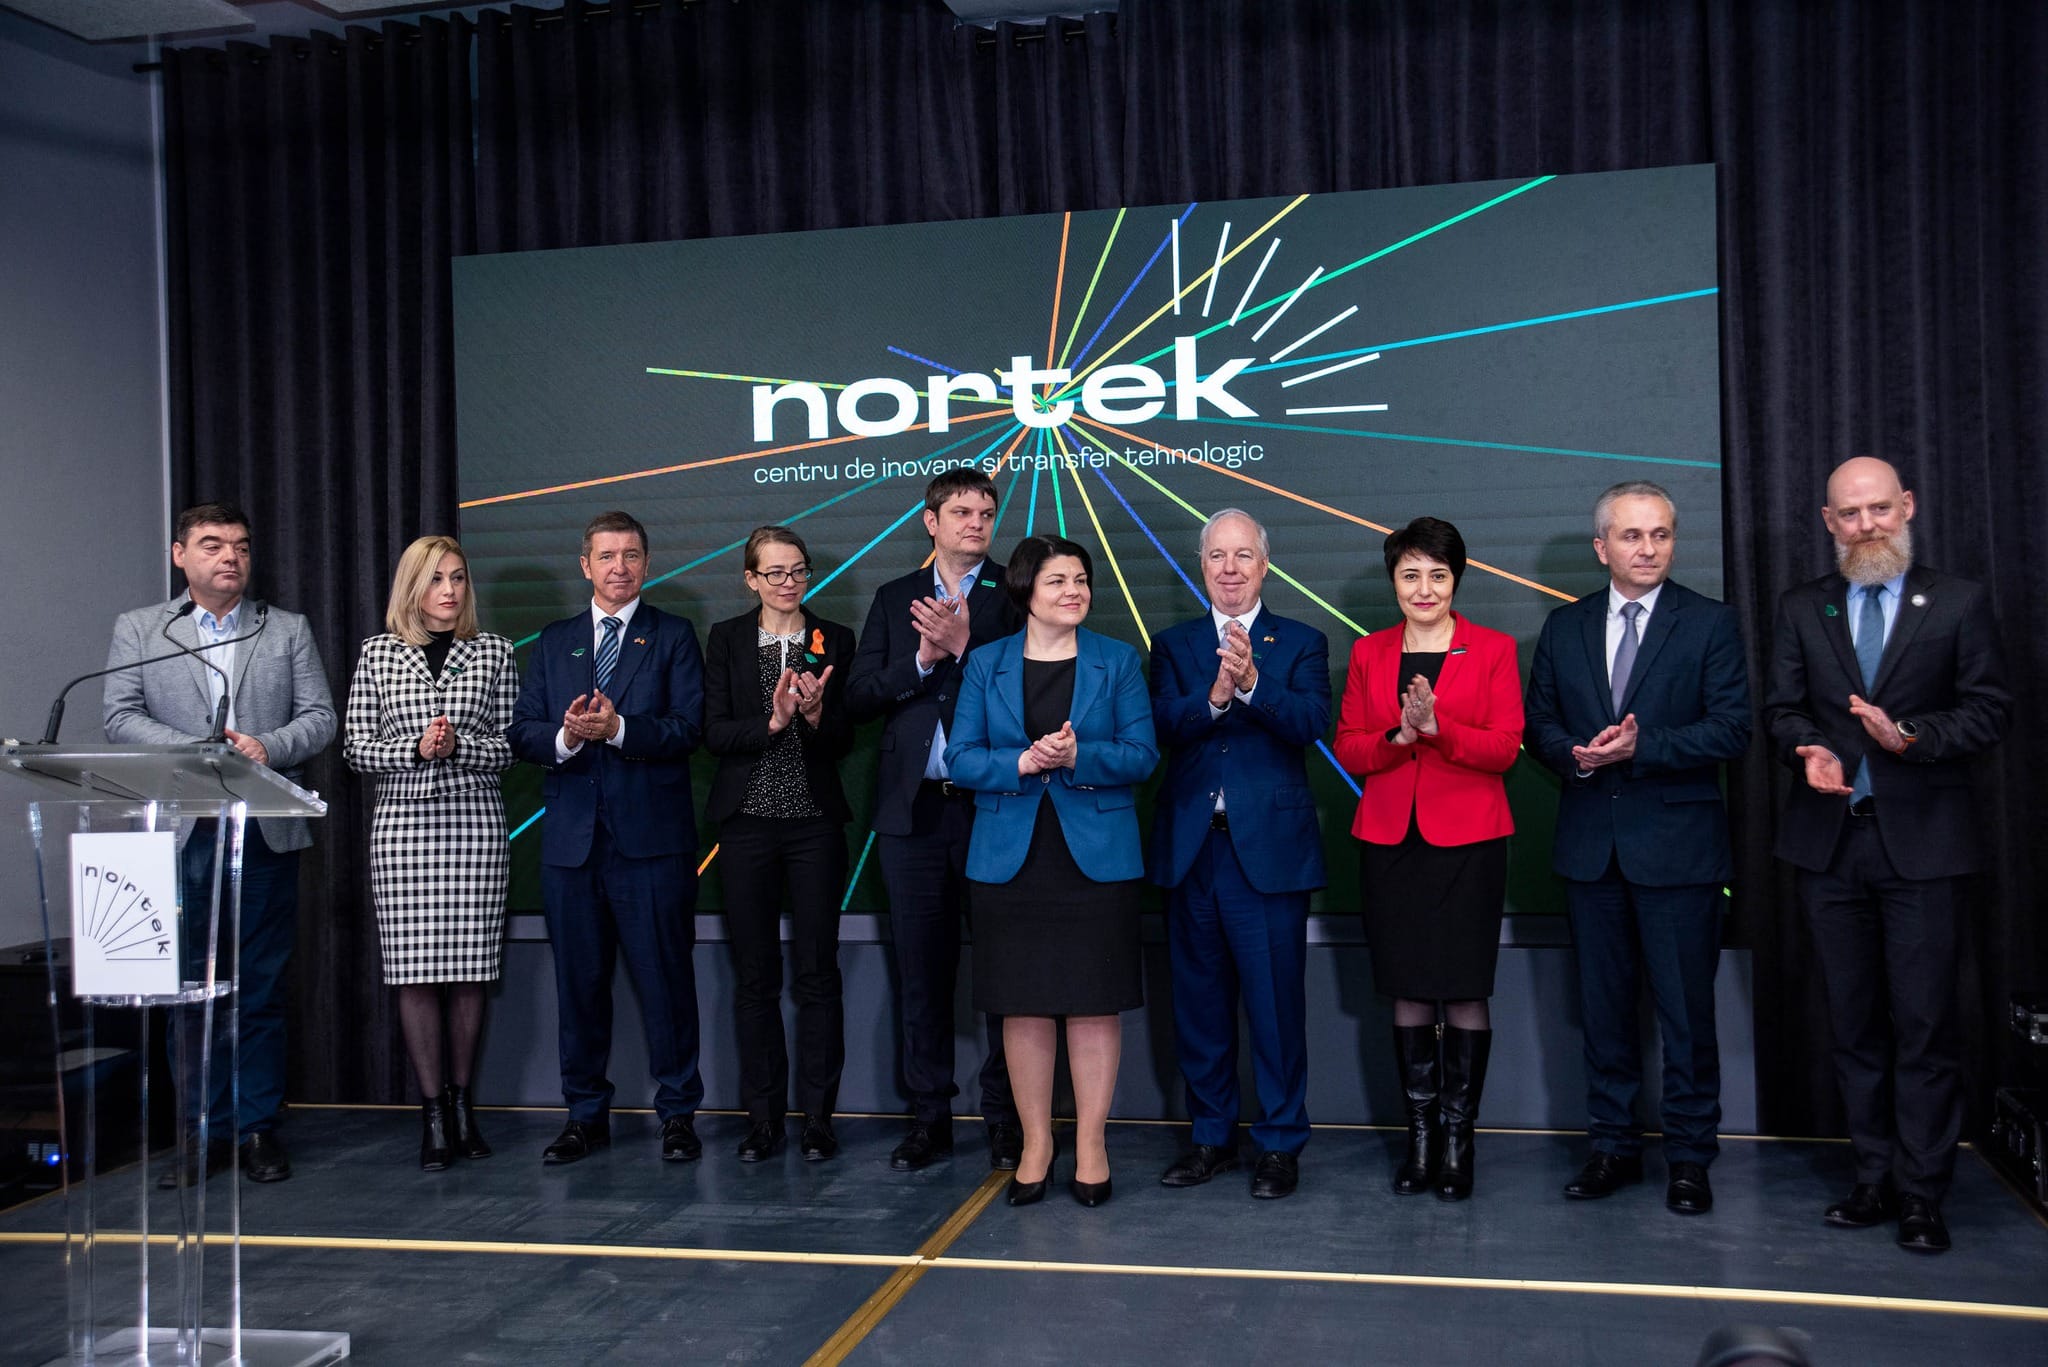 nortek,-primul-centru-de-inovare-si-transfer-tehnologic-din-regiunea-de-dezvoltare-nord,-a-fost-lansat-la-balti